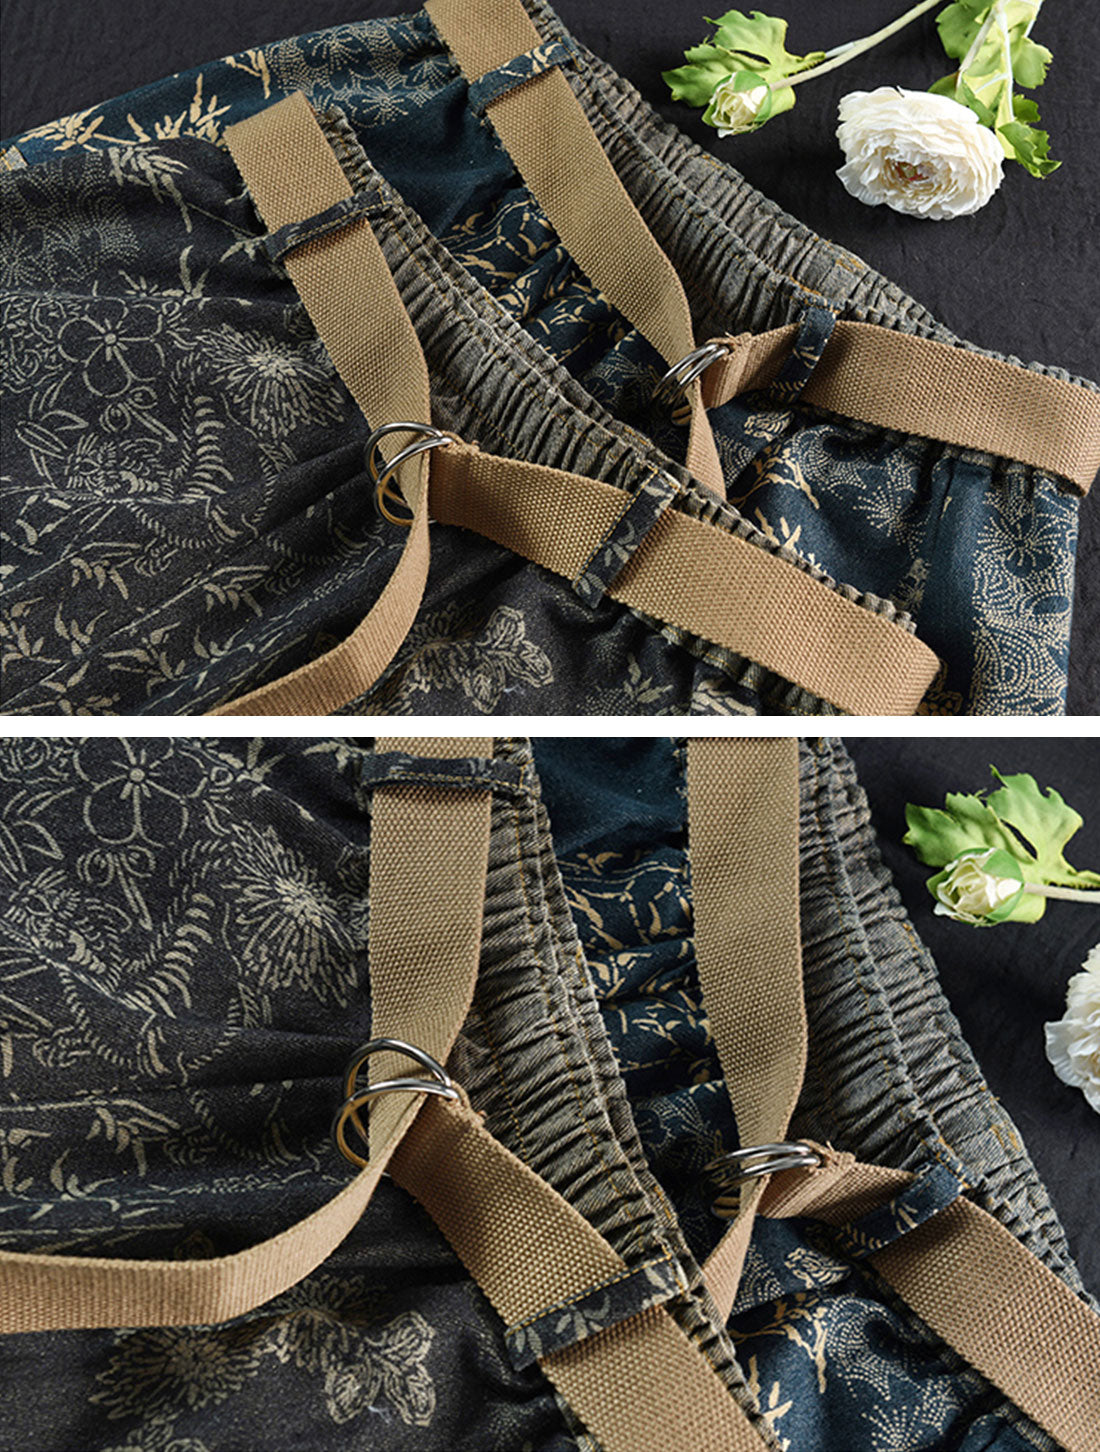 Floral Printing Denim Skirt Details 1